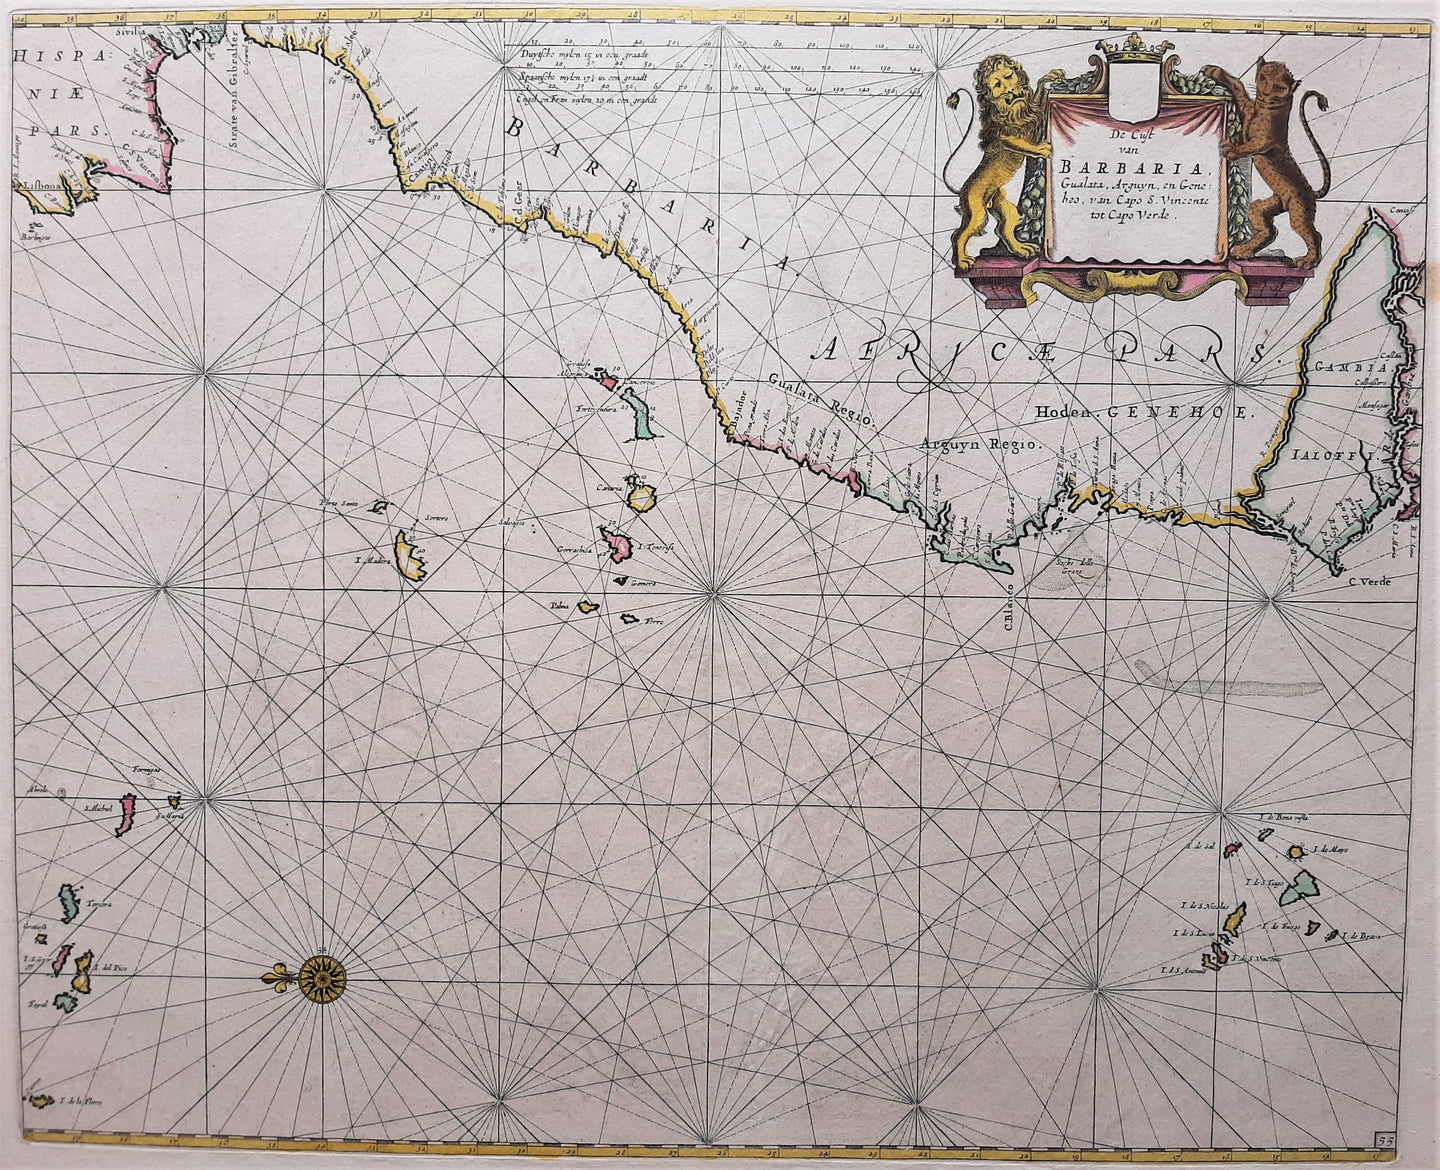 Afrika Noordwestkust met Azoren, Canarische en Kaapverdische eilanden - P Goos - ca 1665